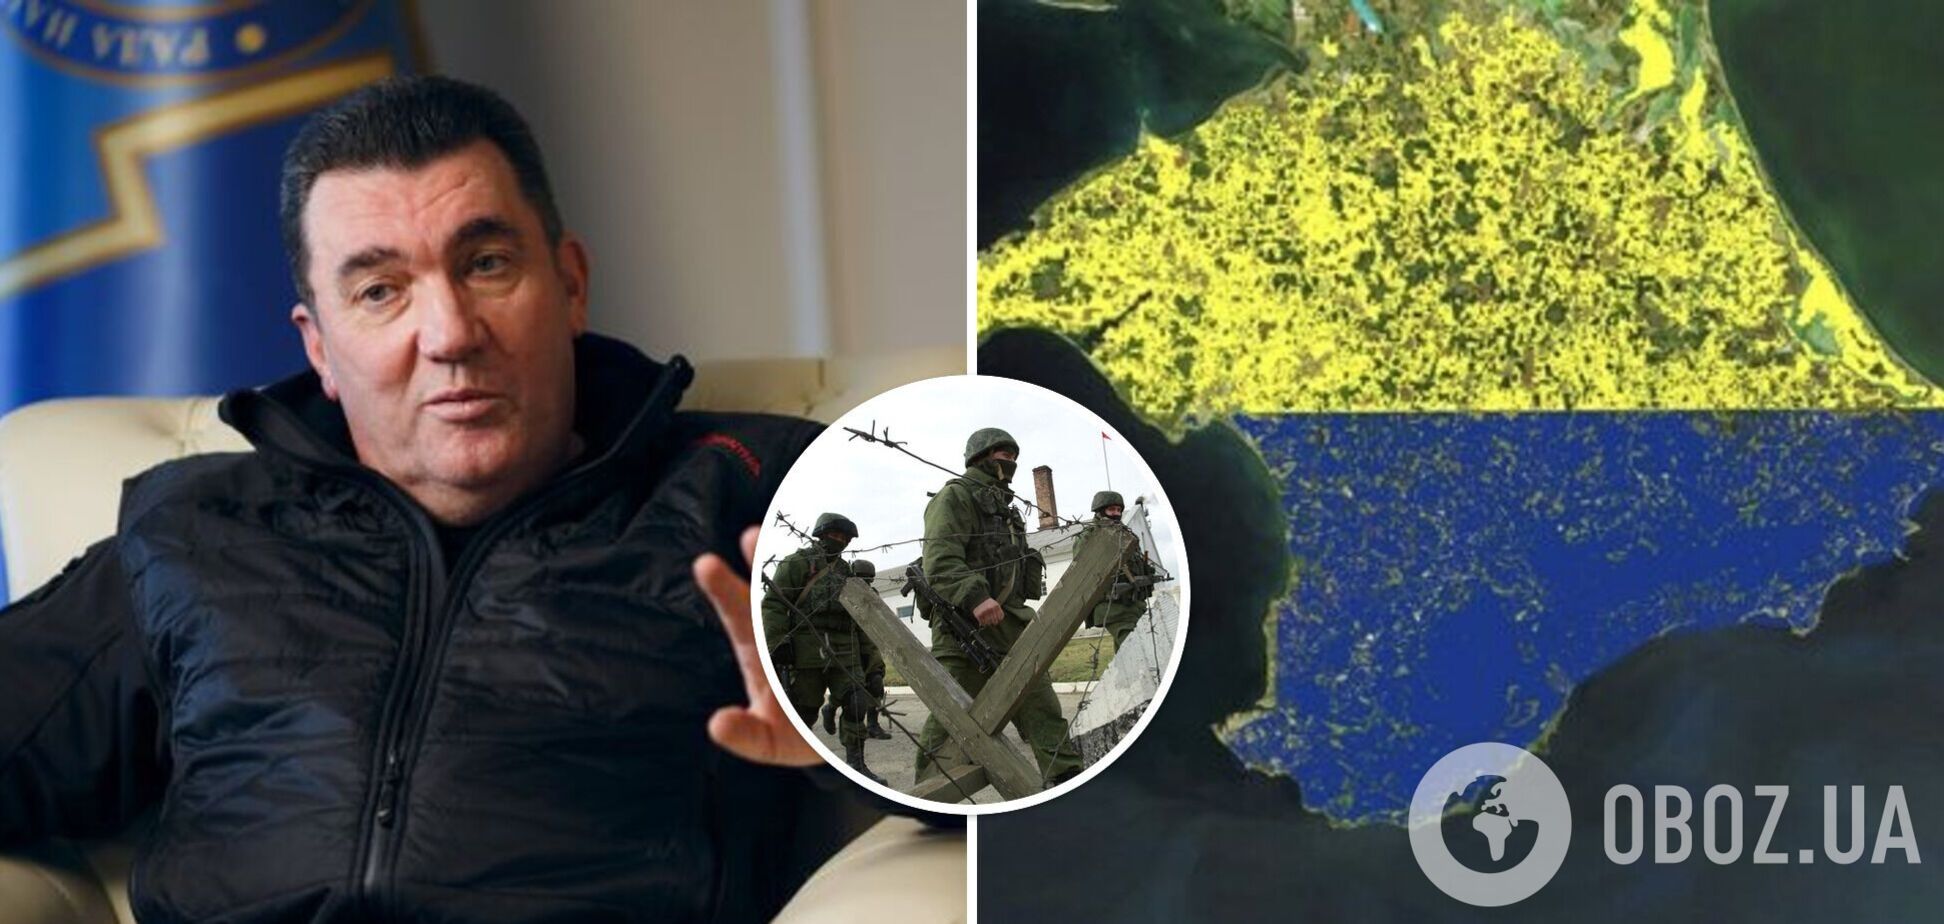 Данилов: Крым – это Украина, для его освобождения мы применим любое не запрещенное оружие